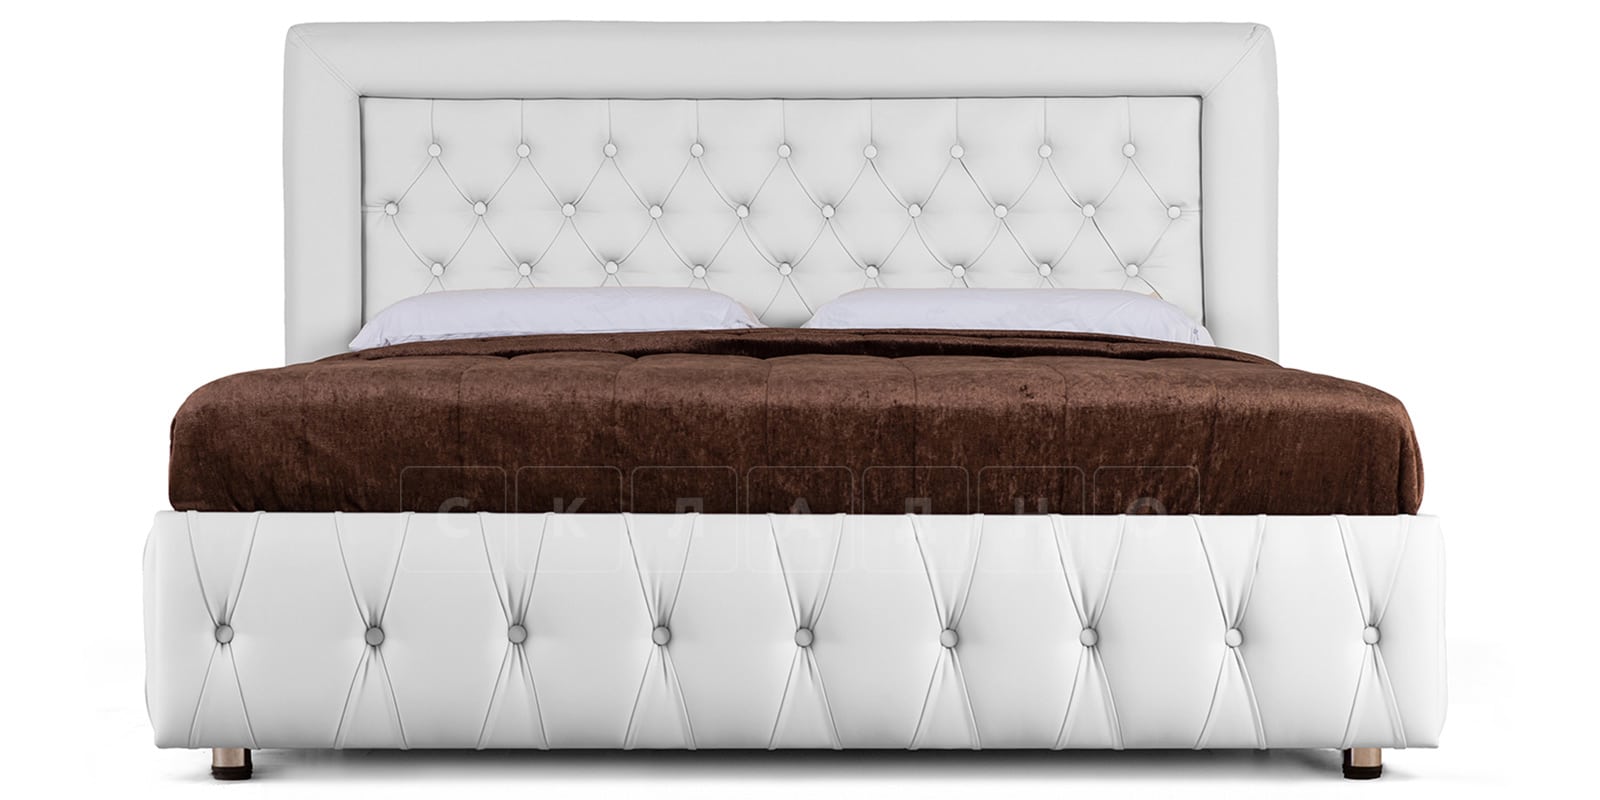 Мягкая кровать Малибу 160 см экокожа белого цвета вариант 7 фото 2 | интернет-магазин Складно